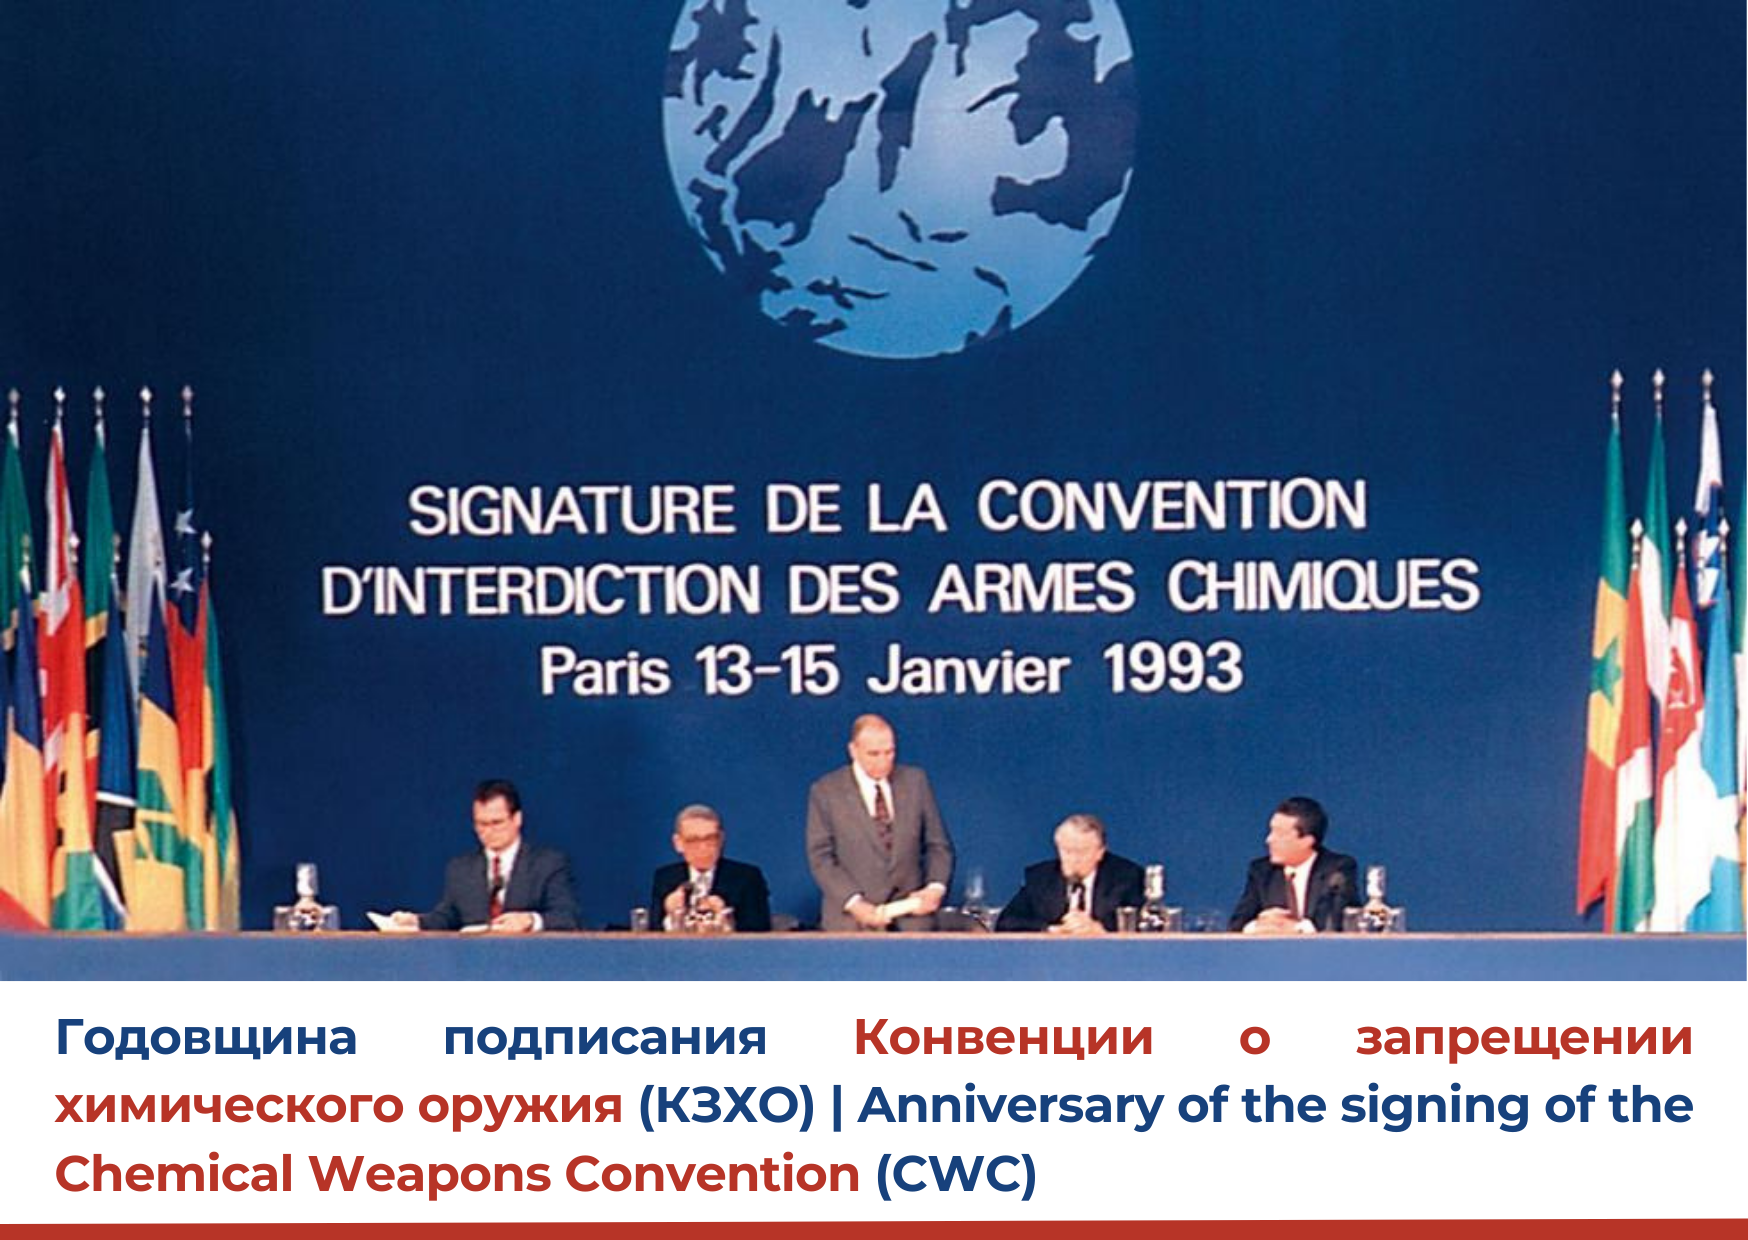 Конвенция 1992